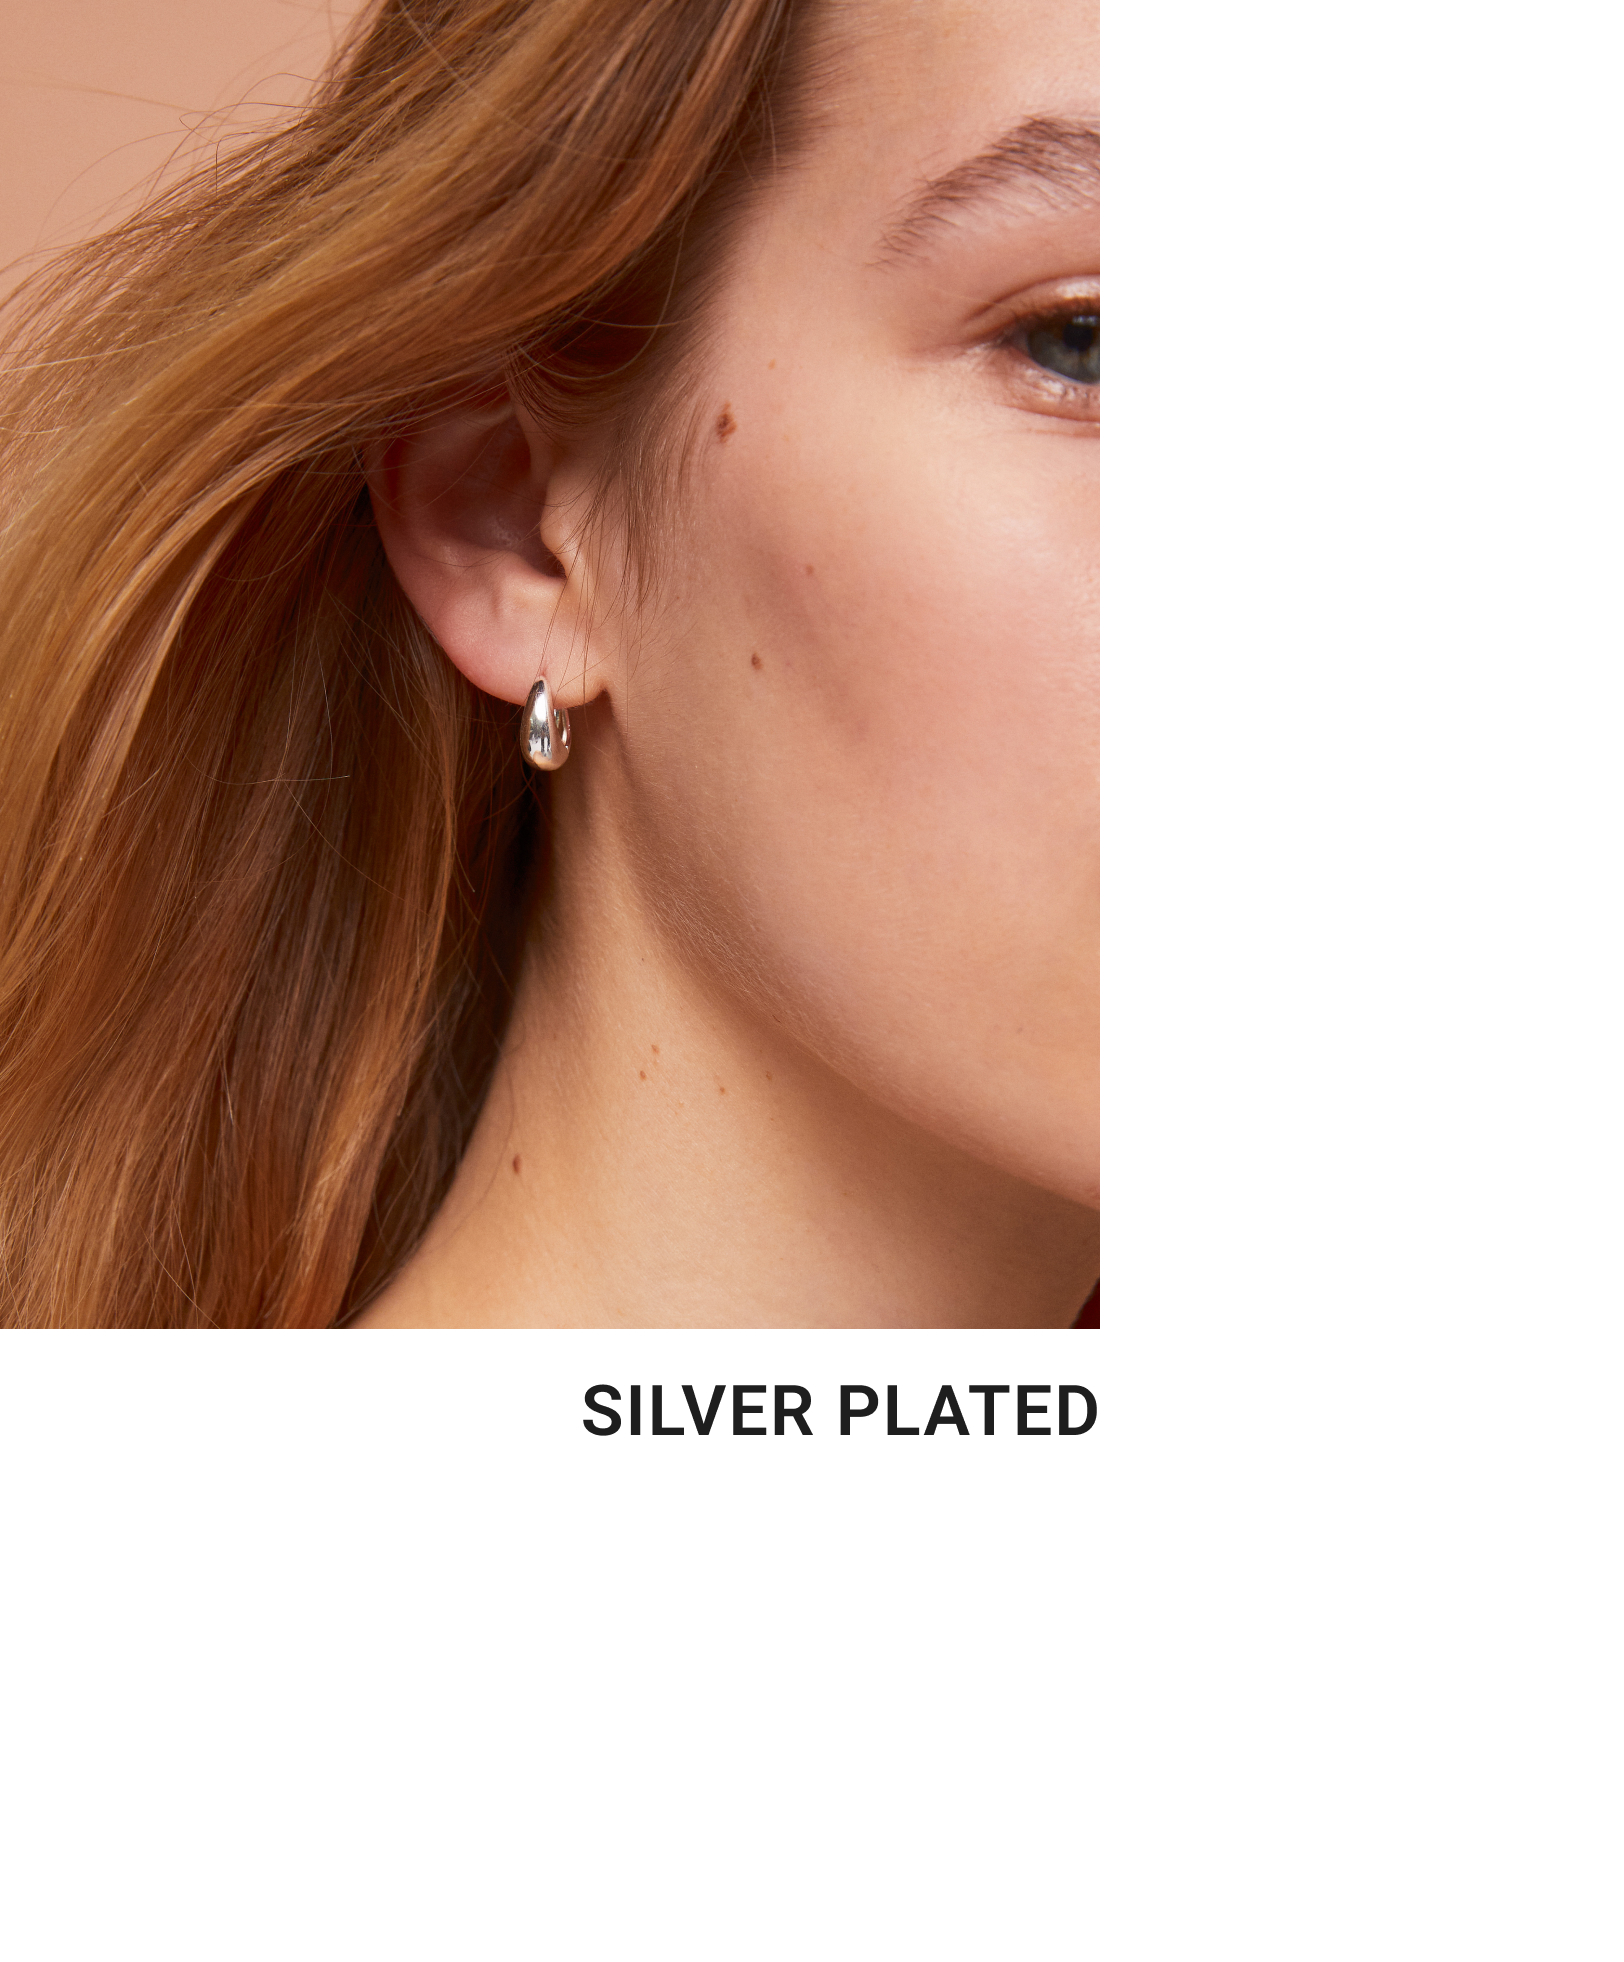 Silver-plated irregular hoop earrings